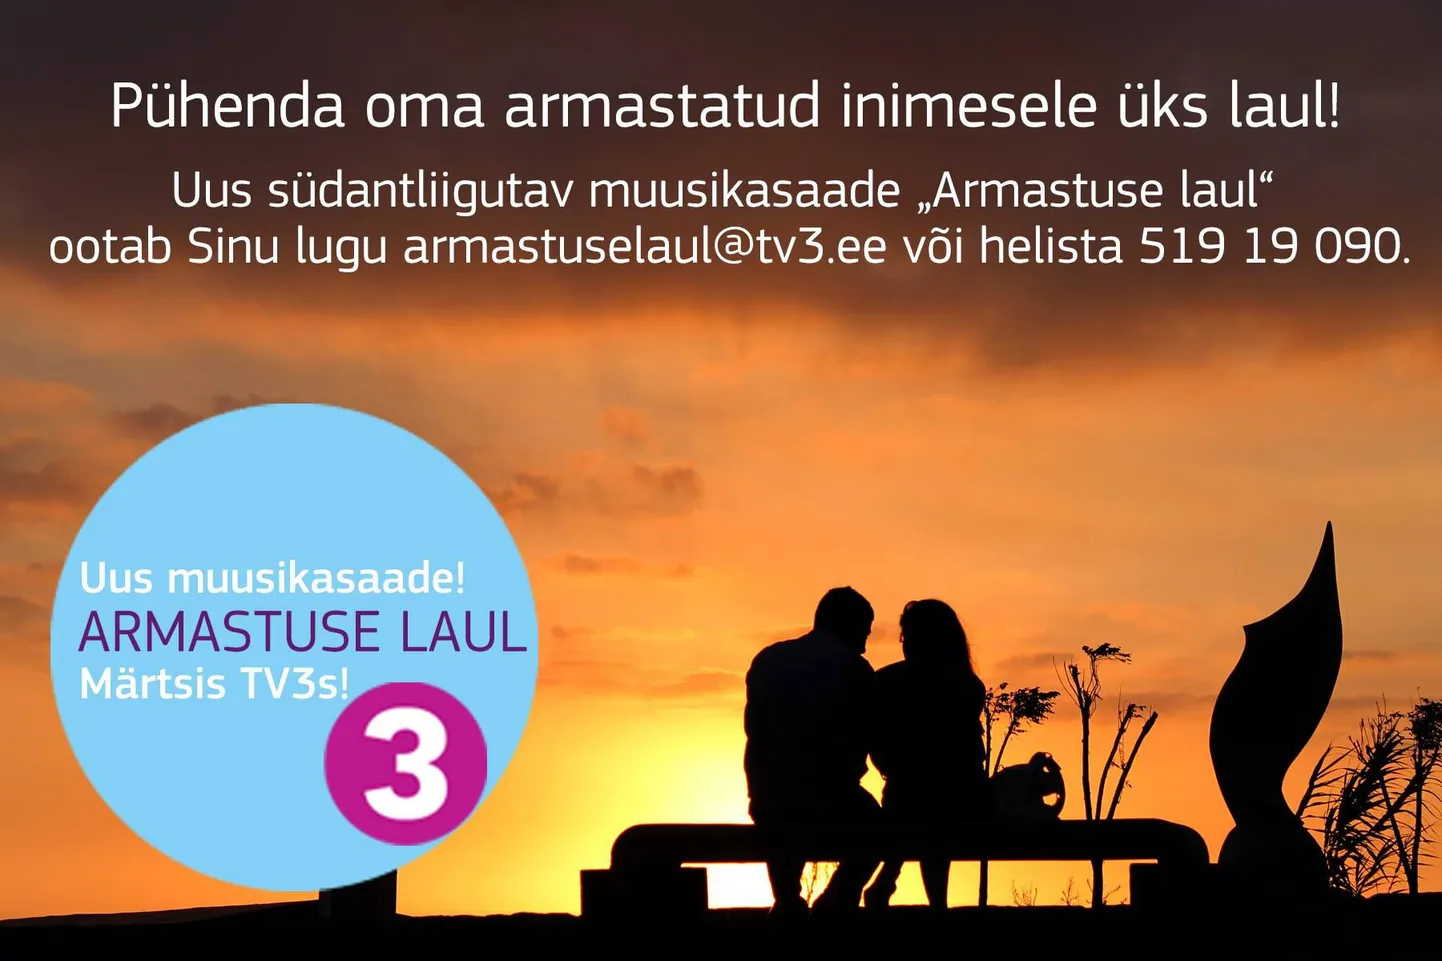 TV3-s alustab uus saatesari «Armastuse laul»